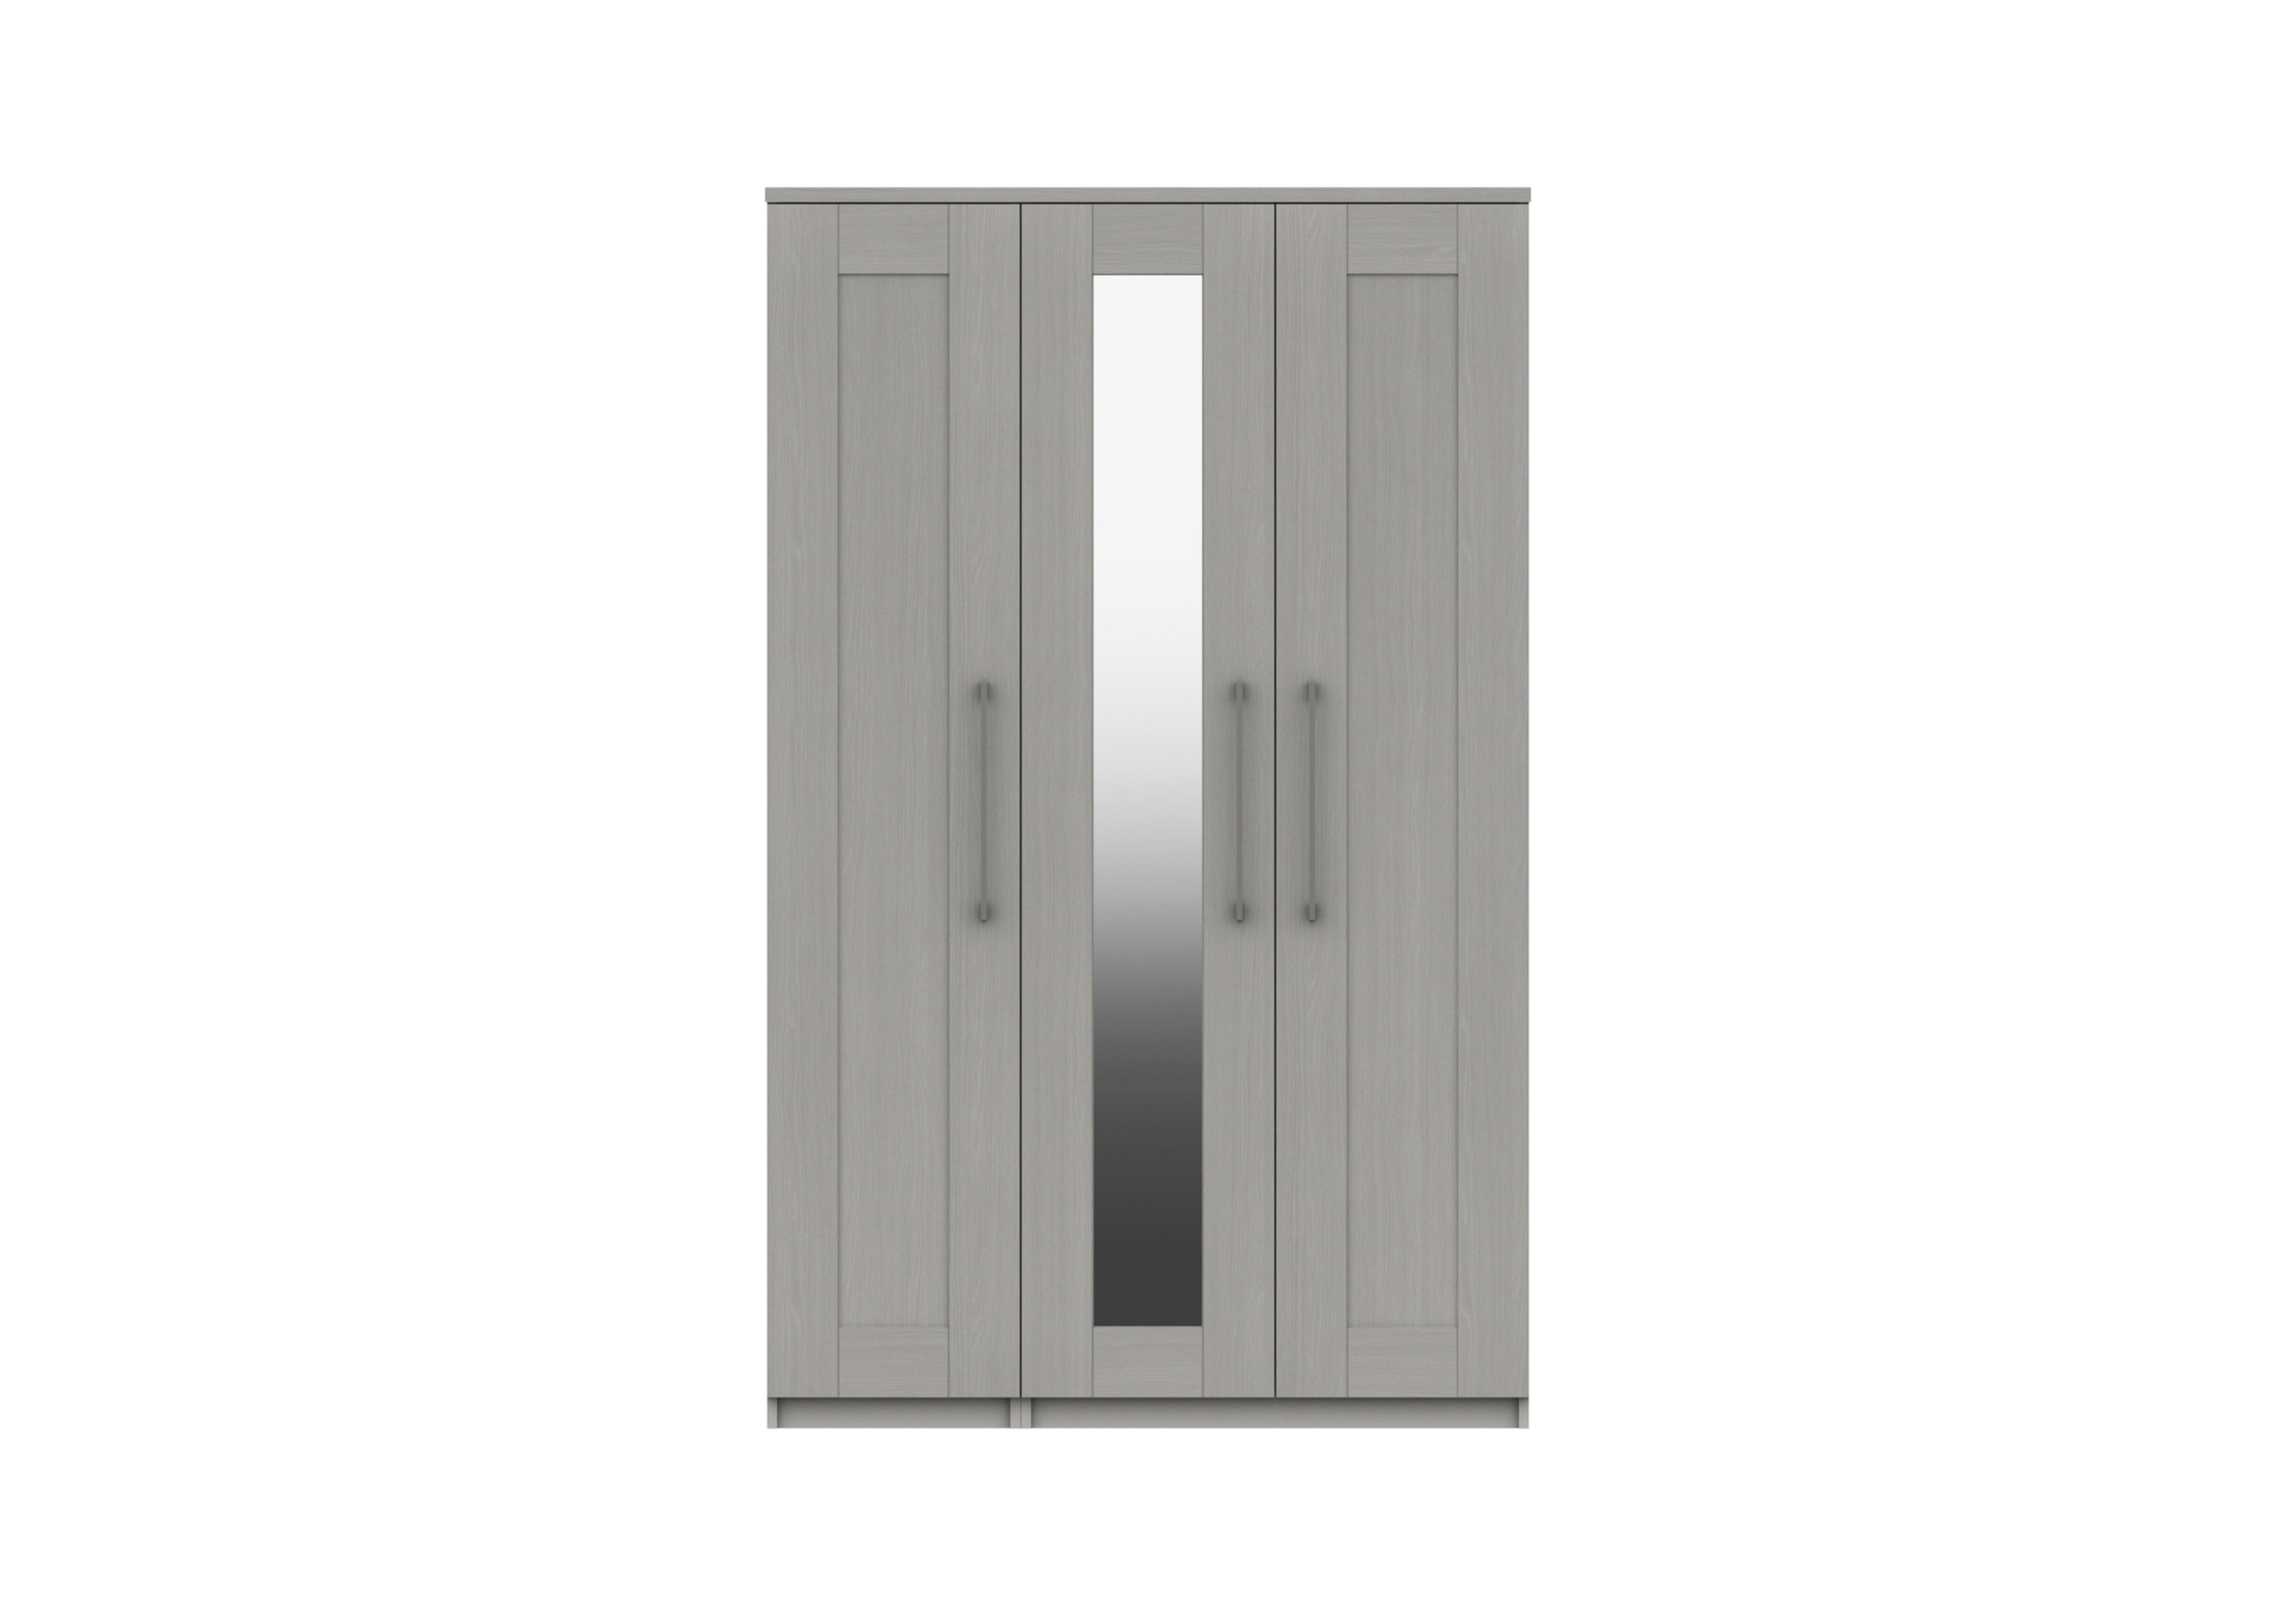 Fenchurch 3 Door Wardrobe with Mirror in Light Grey on Furniture Village